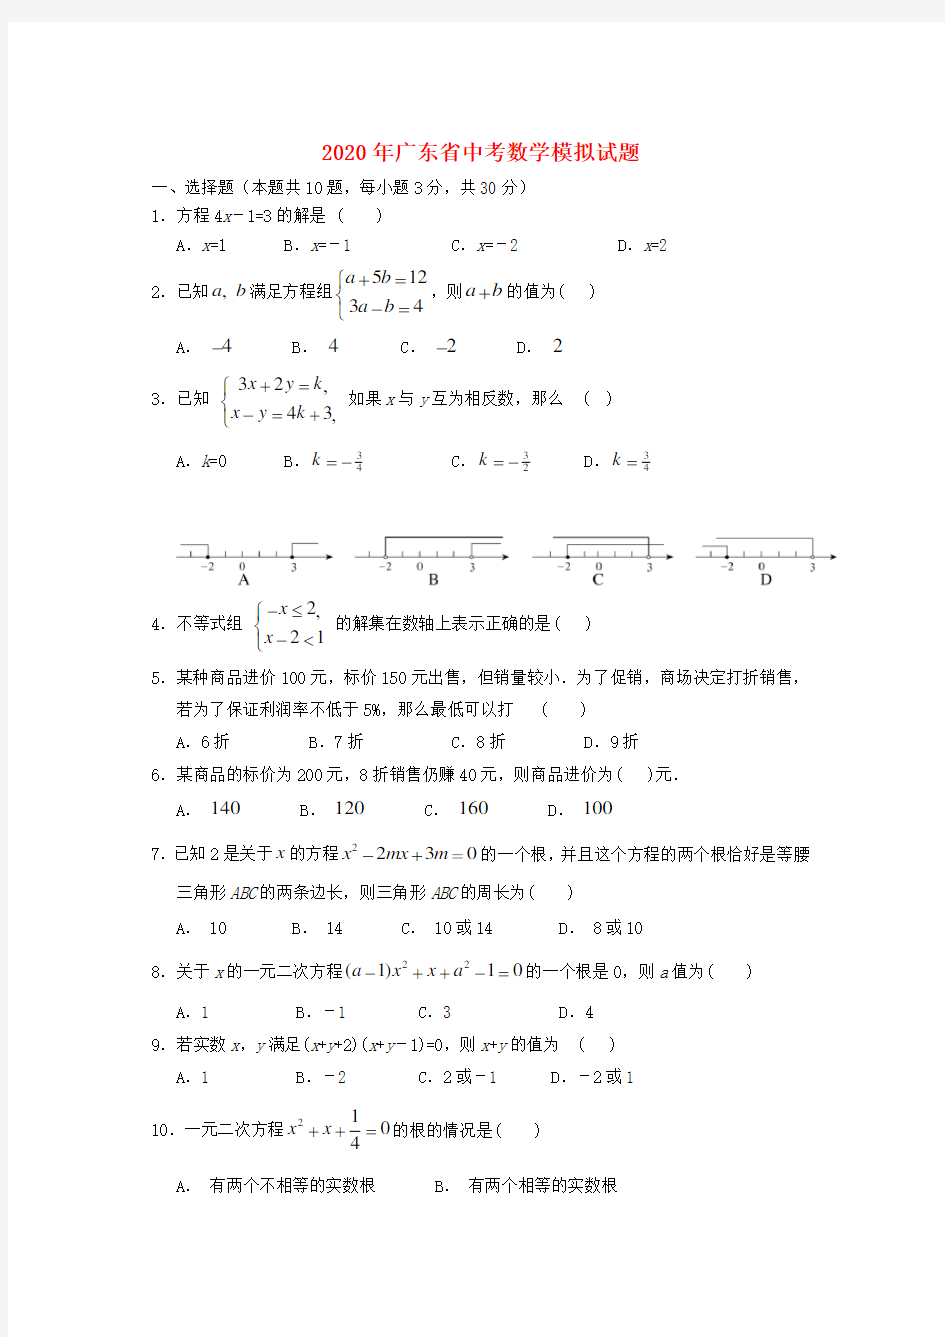 【2020年】广东省中考数学模拟试题(含答案)